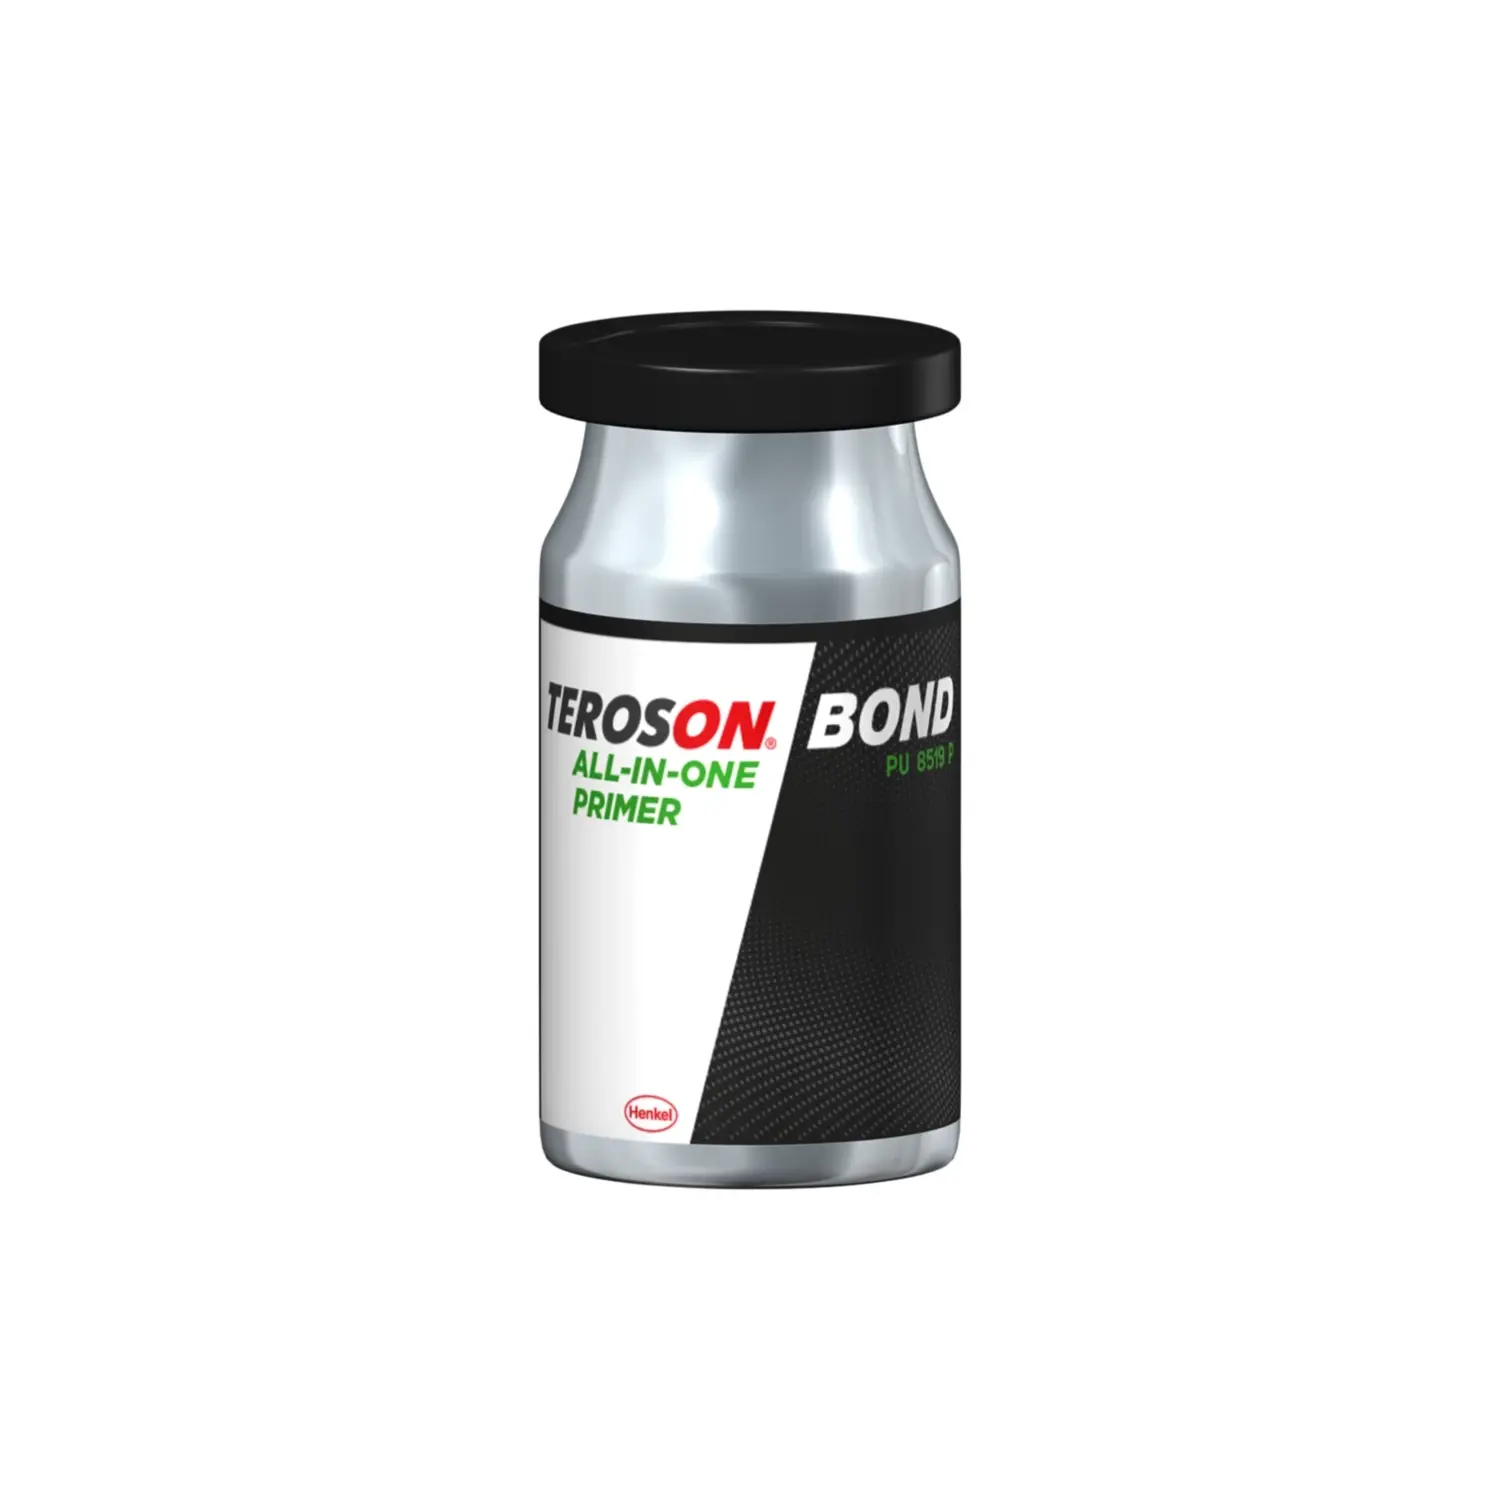 Teroson BOND All-in-one primer - základní nátěr a aktivátor s UV ochranou 25ml